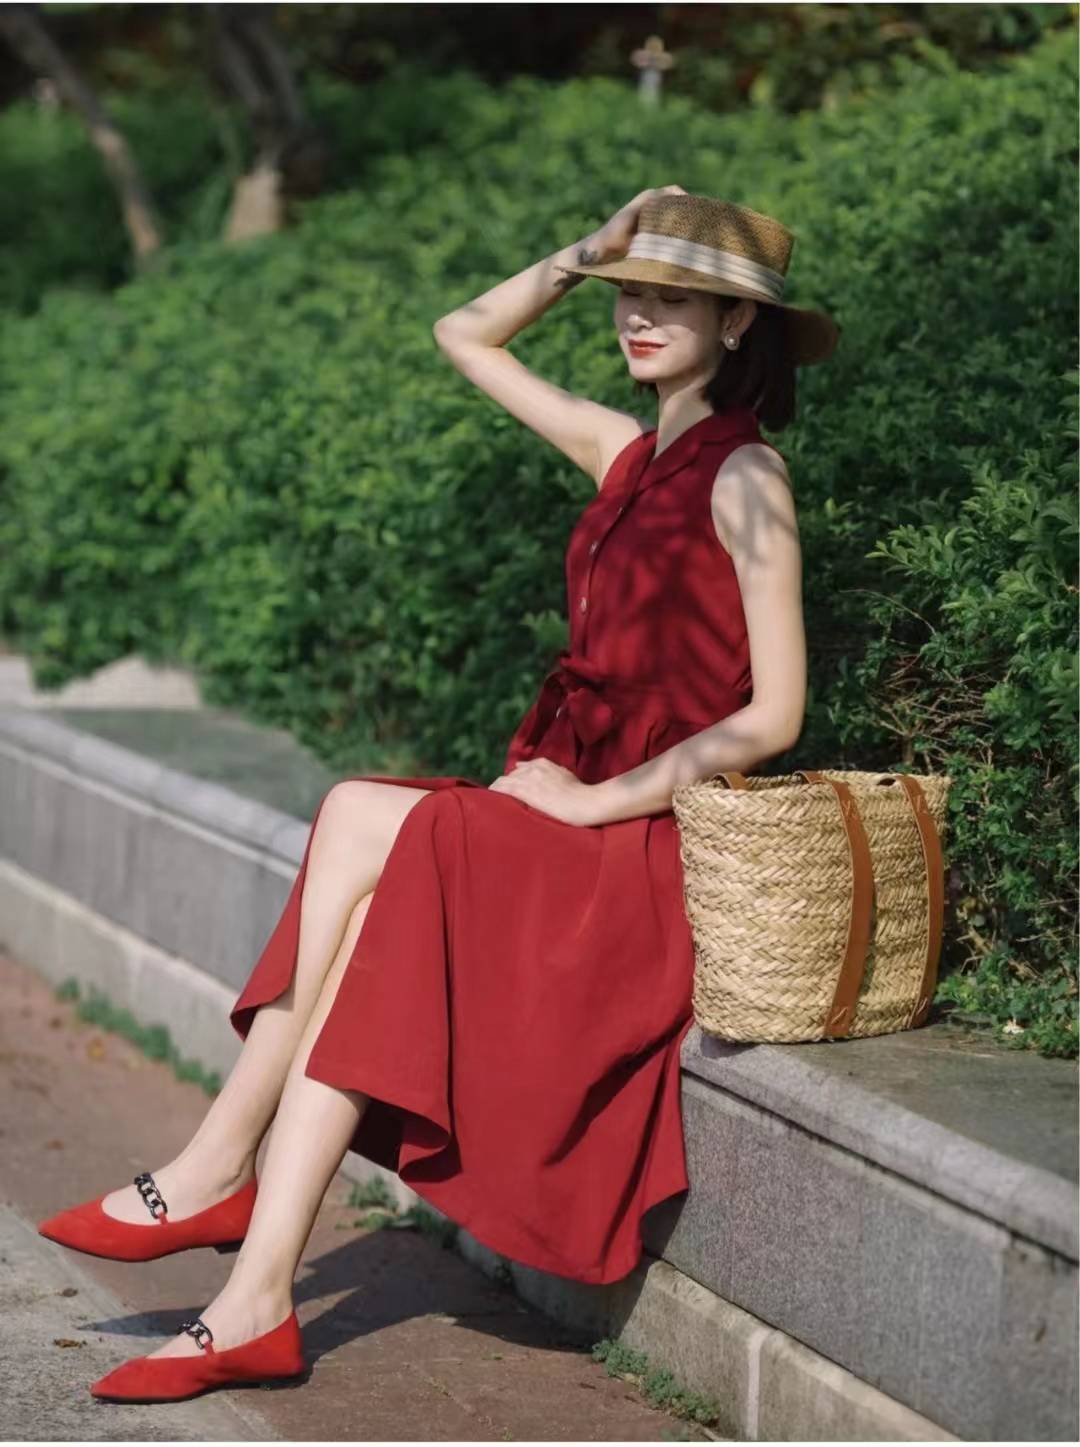 原创红色连衣裙搭配什么颜色鞋子红色长款连衣裙配什么鞋子好看